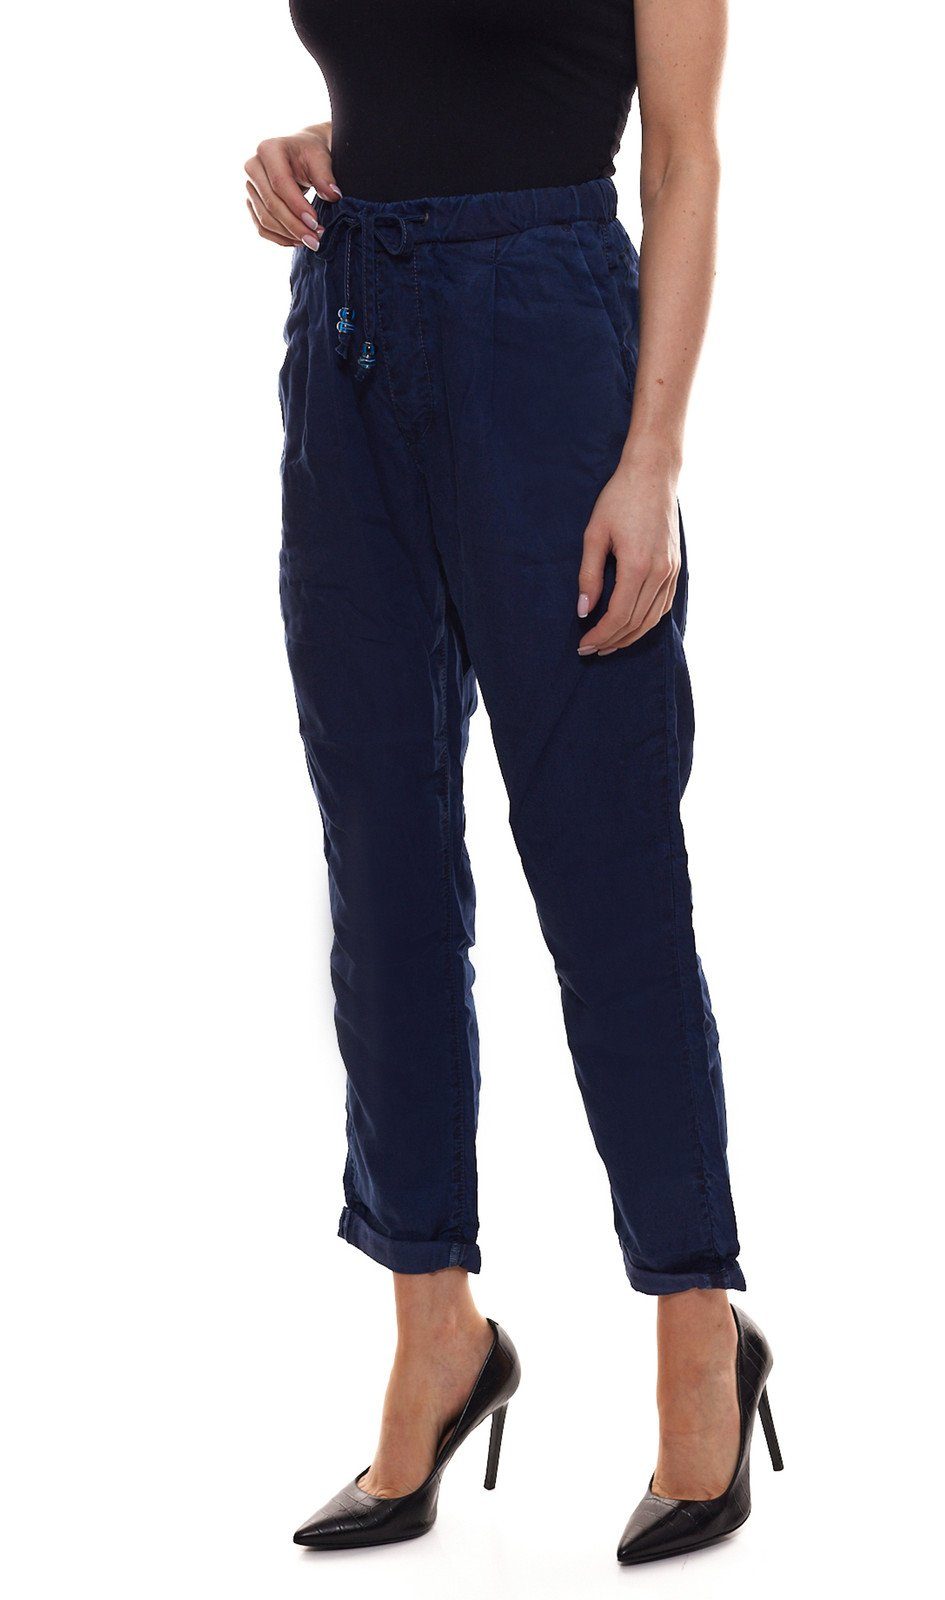 Jeans Sommer-Hose Blau Stoffhose Blue Damen Stoff-Hose Jeans bequeme Pepe Donna Pepe im Jeans-Stil Business-Hose